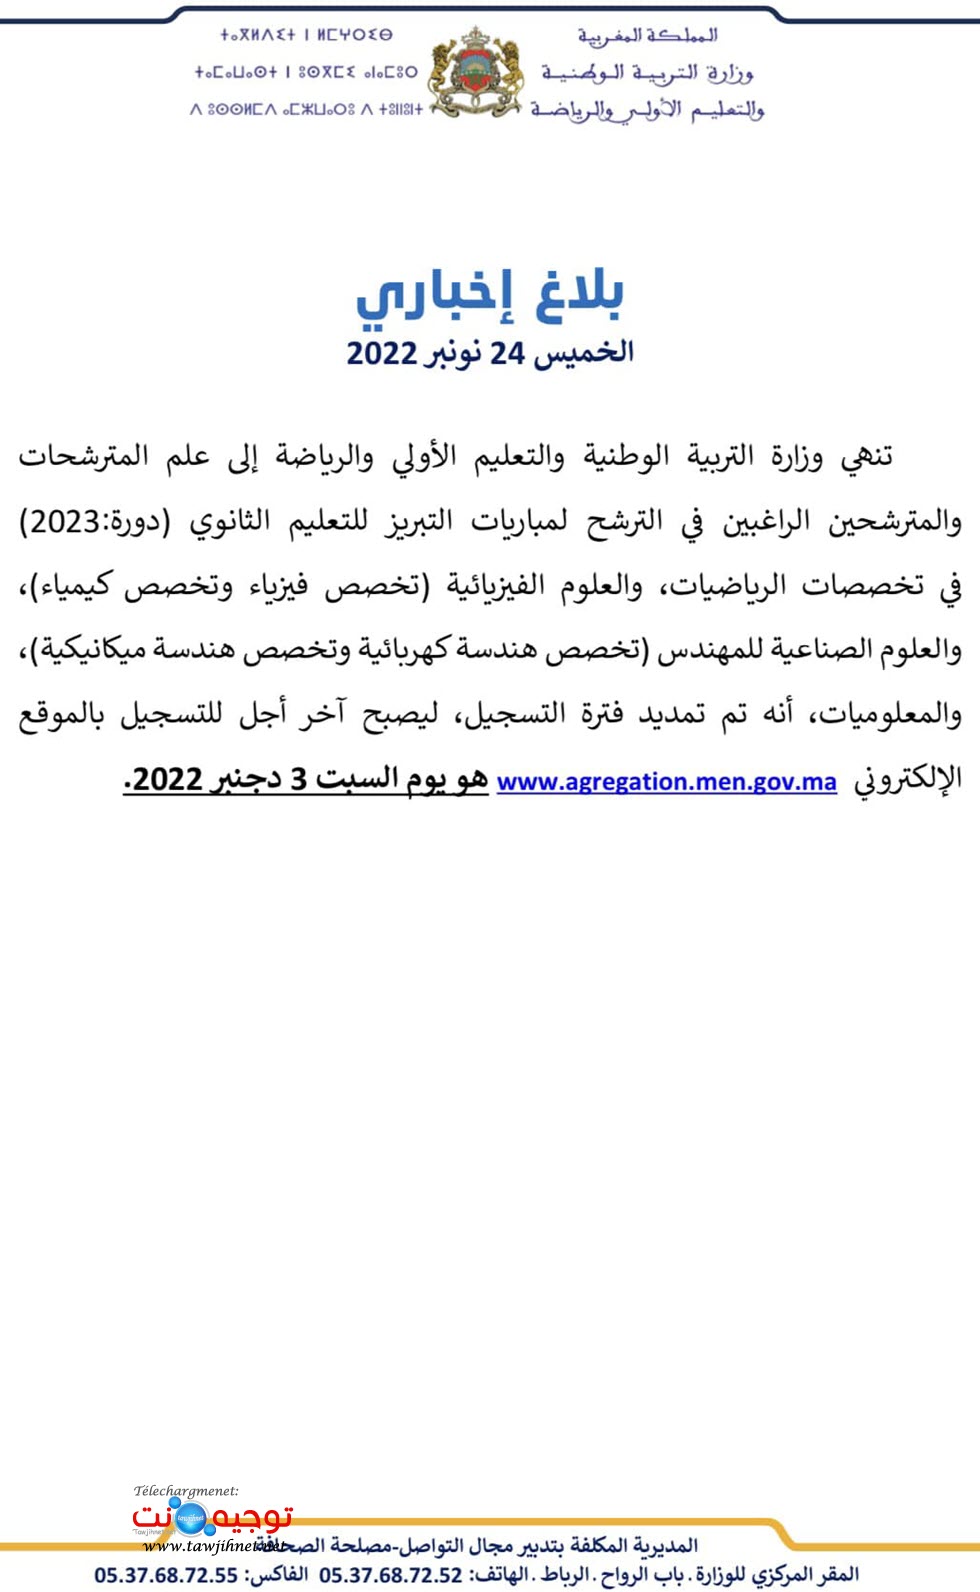 بلاغ الوزارة تمديبد اخر اجل لغاية للتسجيل الالكتروني لغاية  03-12-2022